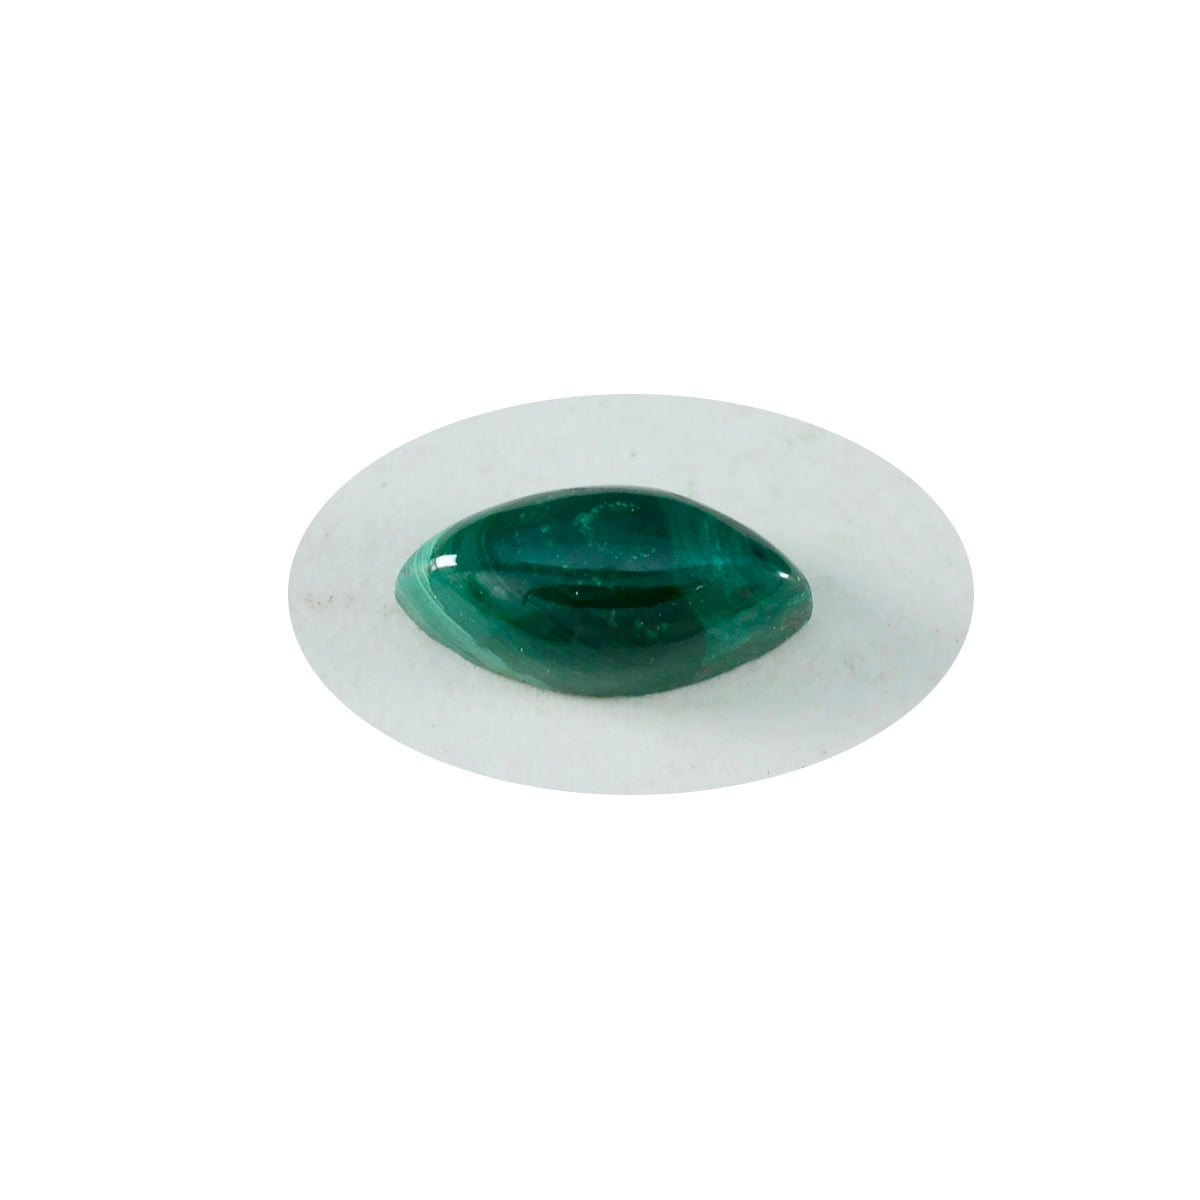 riyogems 1шт зеленый малахит кабошон 5х10 мм форма маркиза красивый качественный драгоценный камень